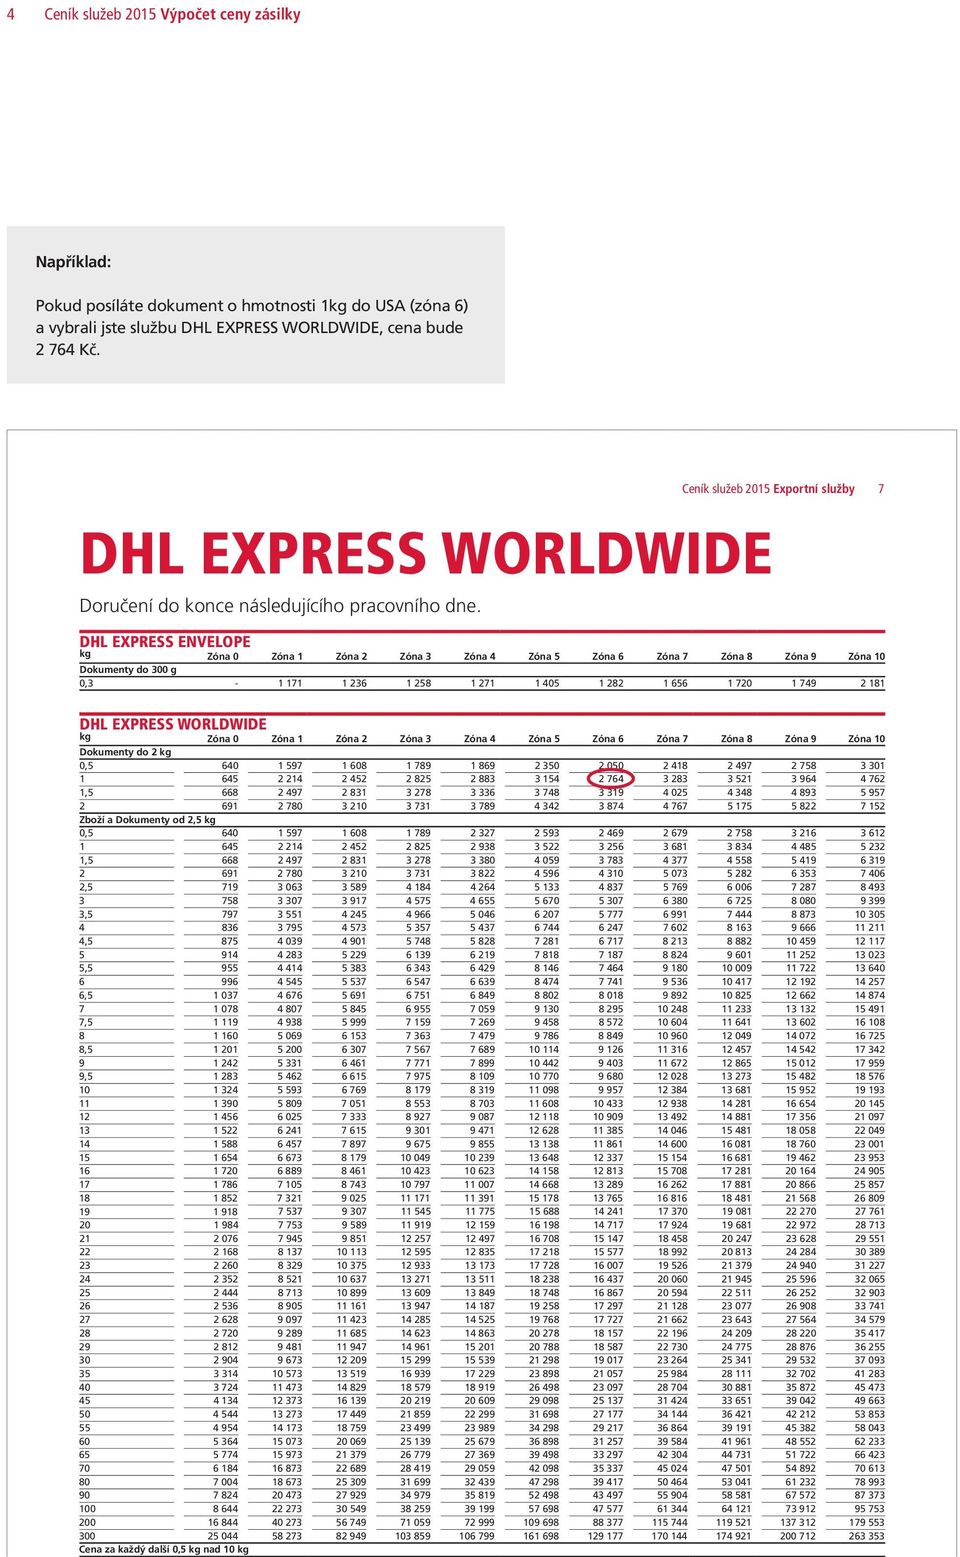 Ceník služeb 2015 Exportní služby 7 DHL EXPRESS ENVELOPE kg Zóna 0 Zóna 1 Zóna 2 Zóna 3 Zóna 4 Zóna 5 Zóna 6 Zóna 7 Zóna 8 Zóna 9 Zóna 10 Dokumenty do 300 g 0,3-1 171 1 236 1 258 1 271 1 405 1 282 1